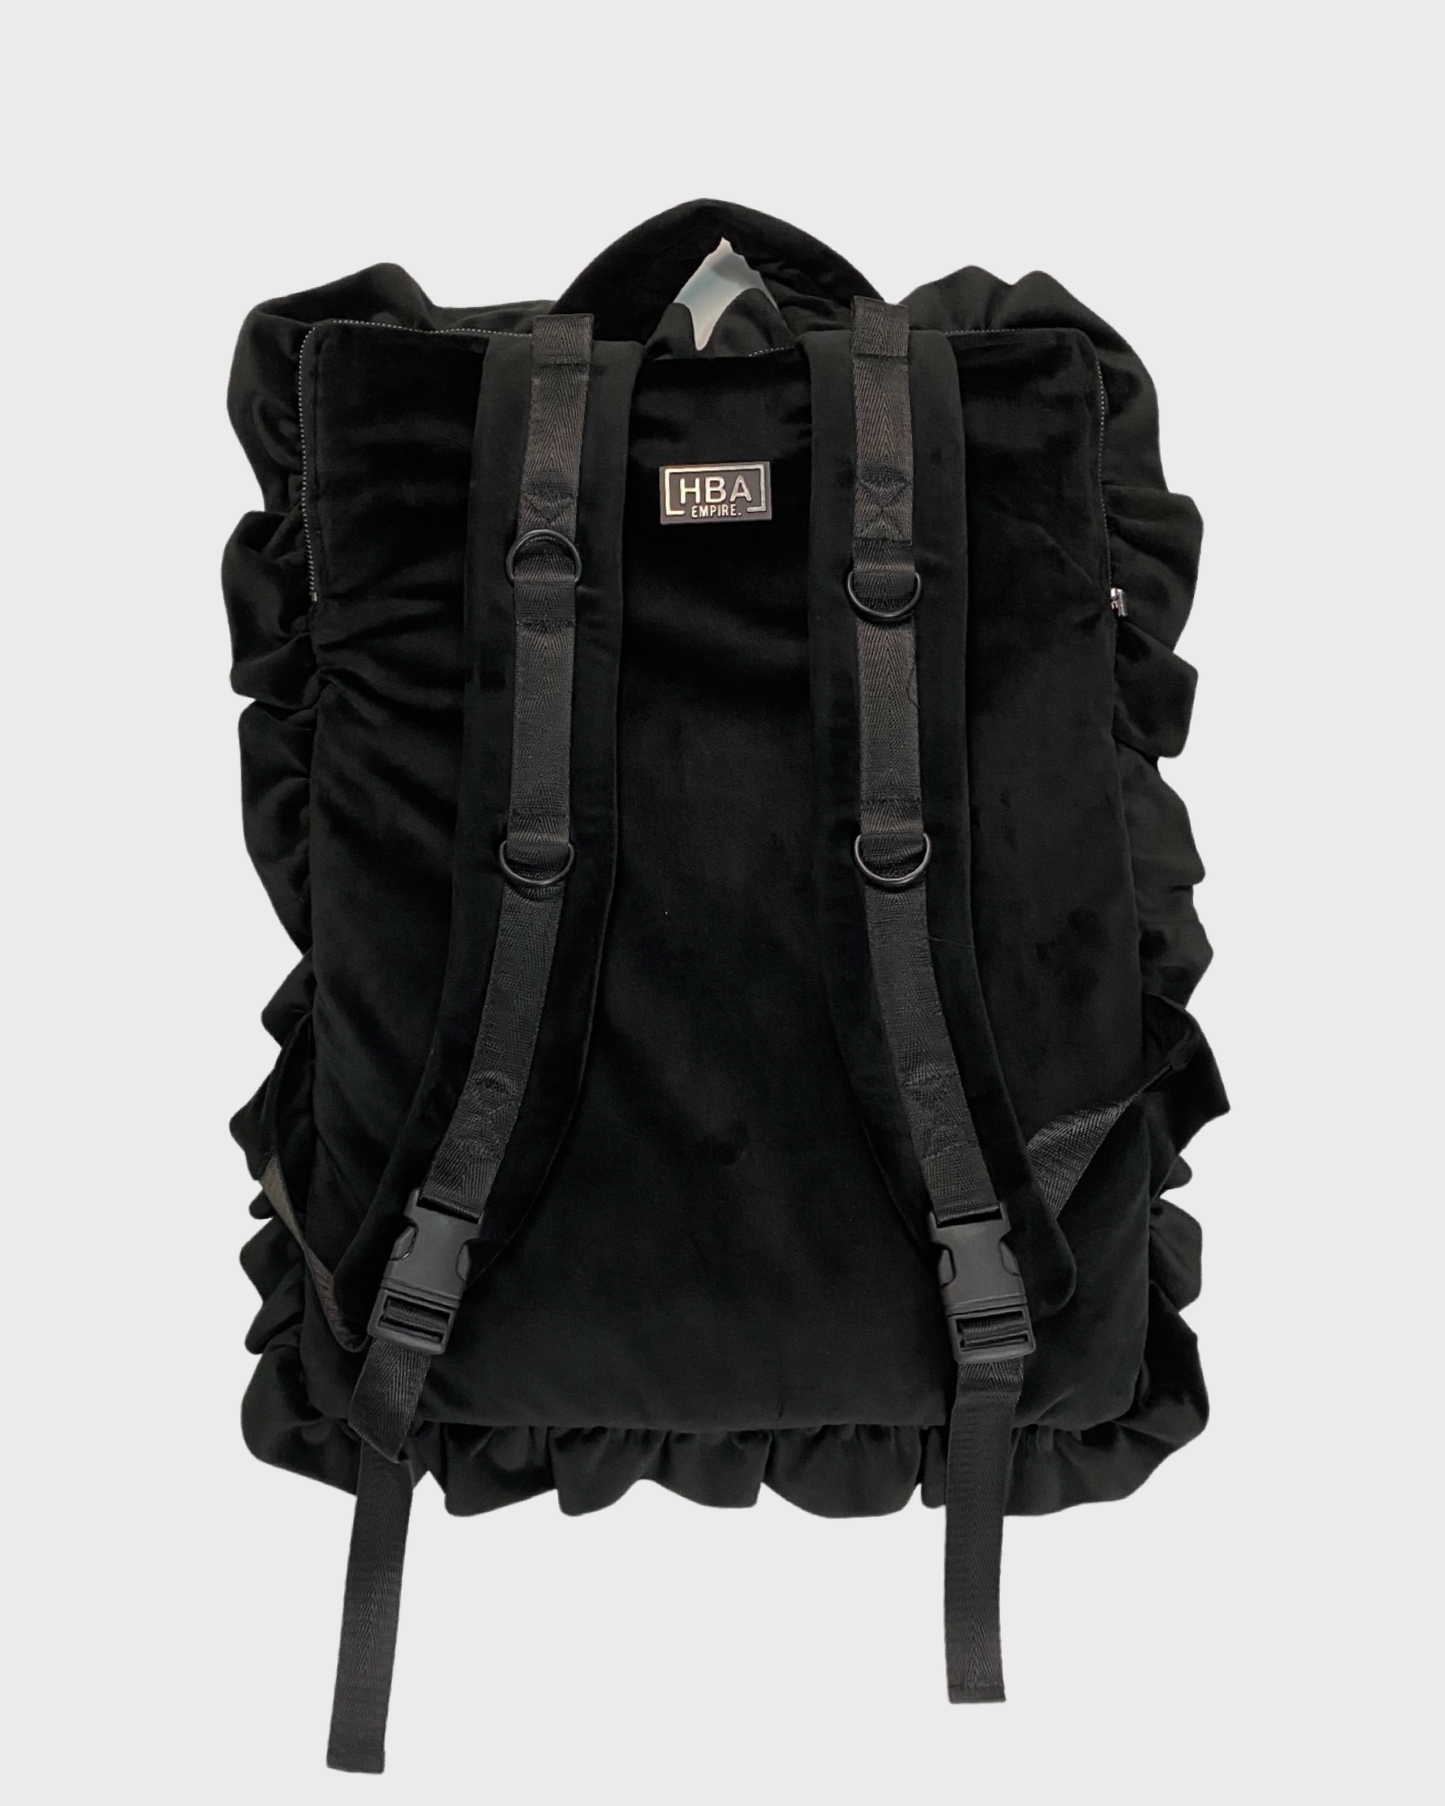 HBA velour / velvet pillow backpack in black SZ:OS